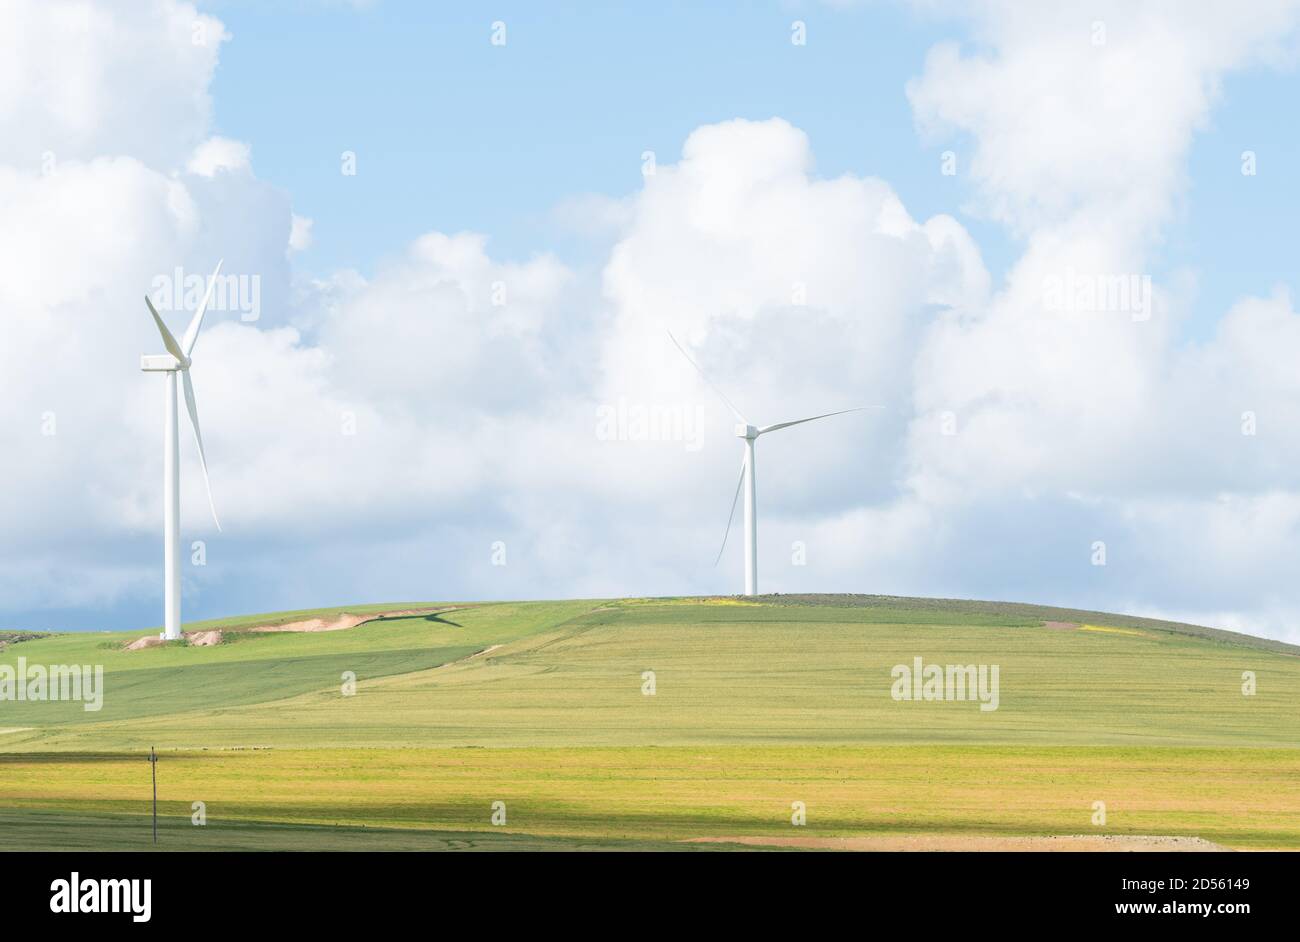 Éoliennes dans une ferme de la région d'Overberg De l'Afrique du Sud concept de technologie et de sensibilisation à l'environnement en Afrique Banque D'Images